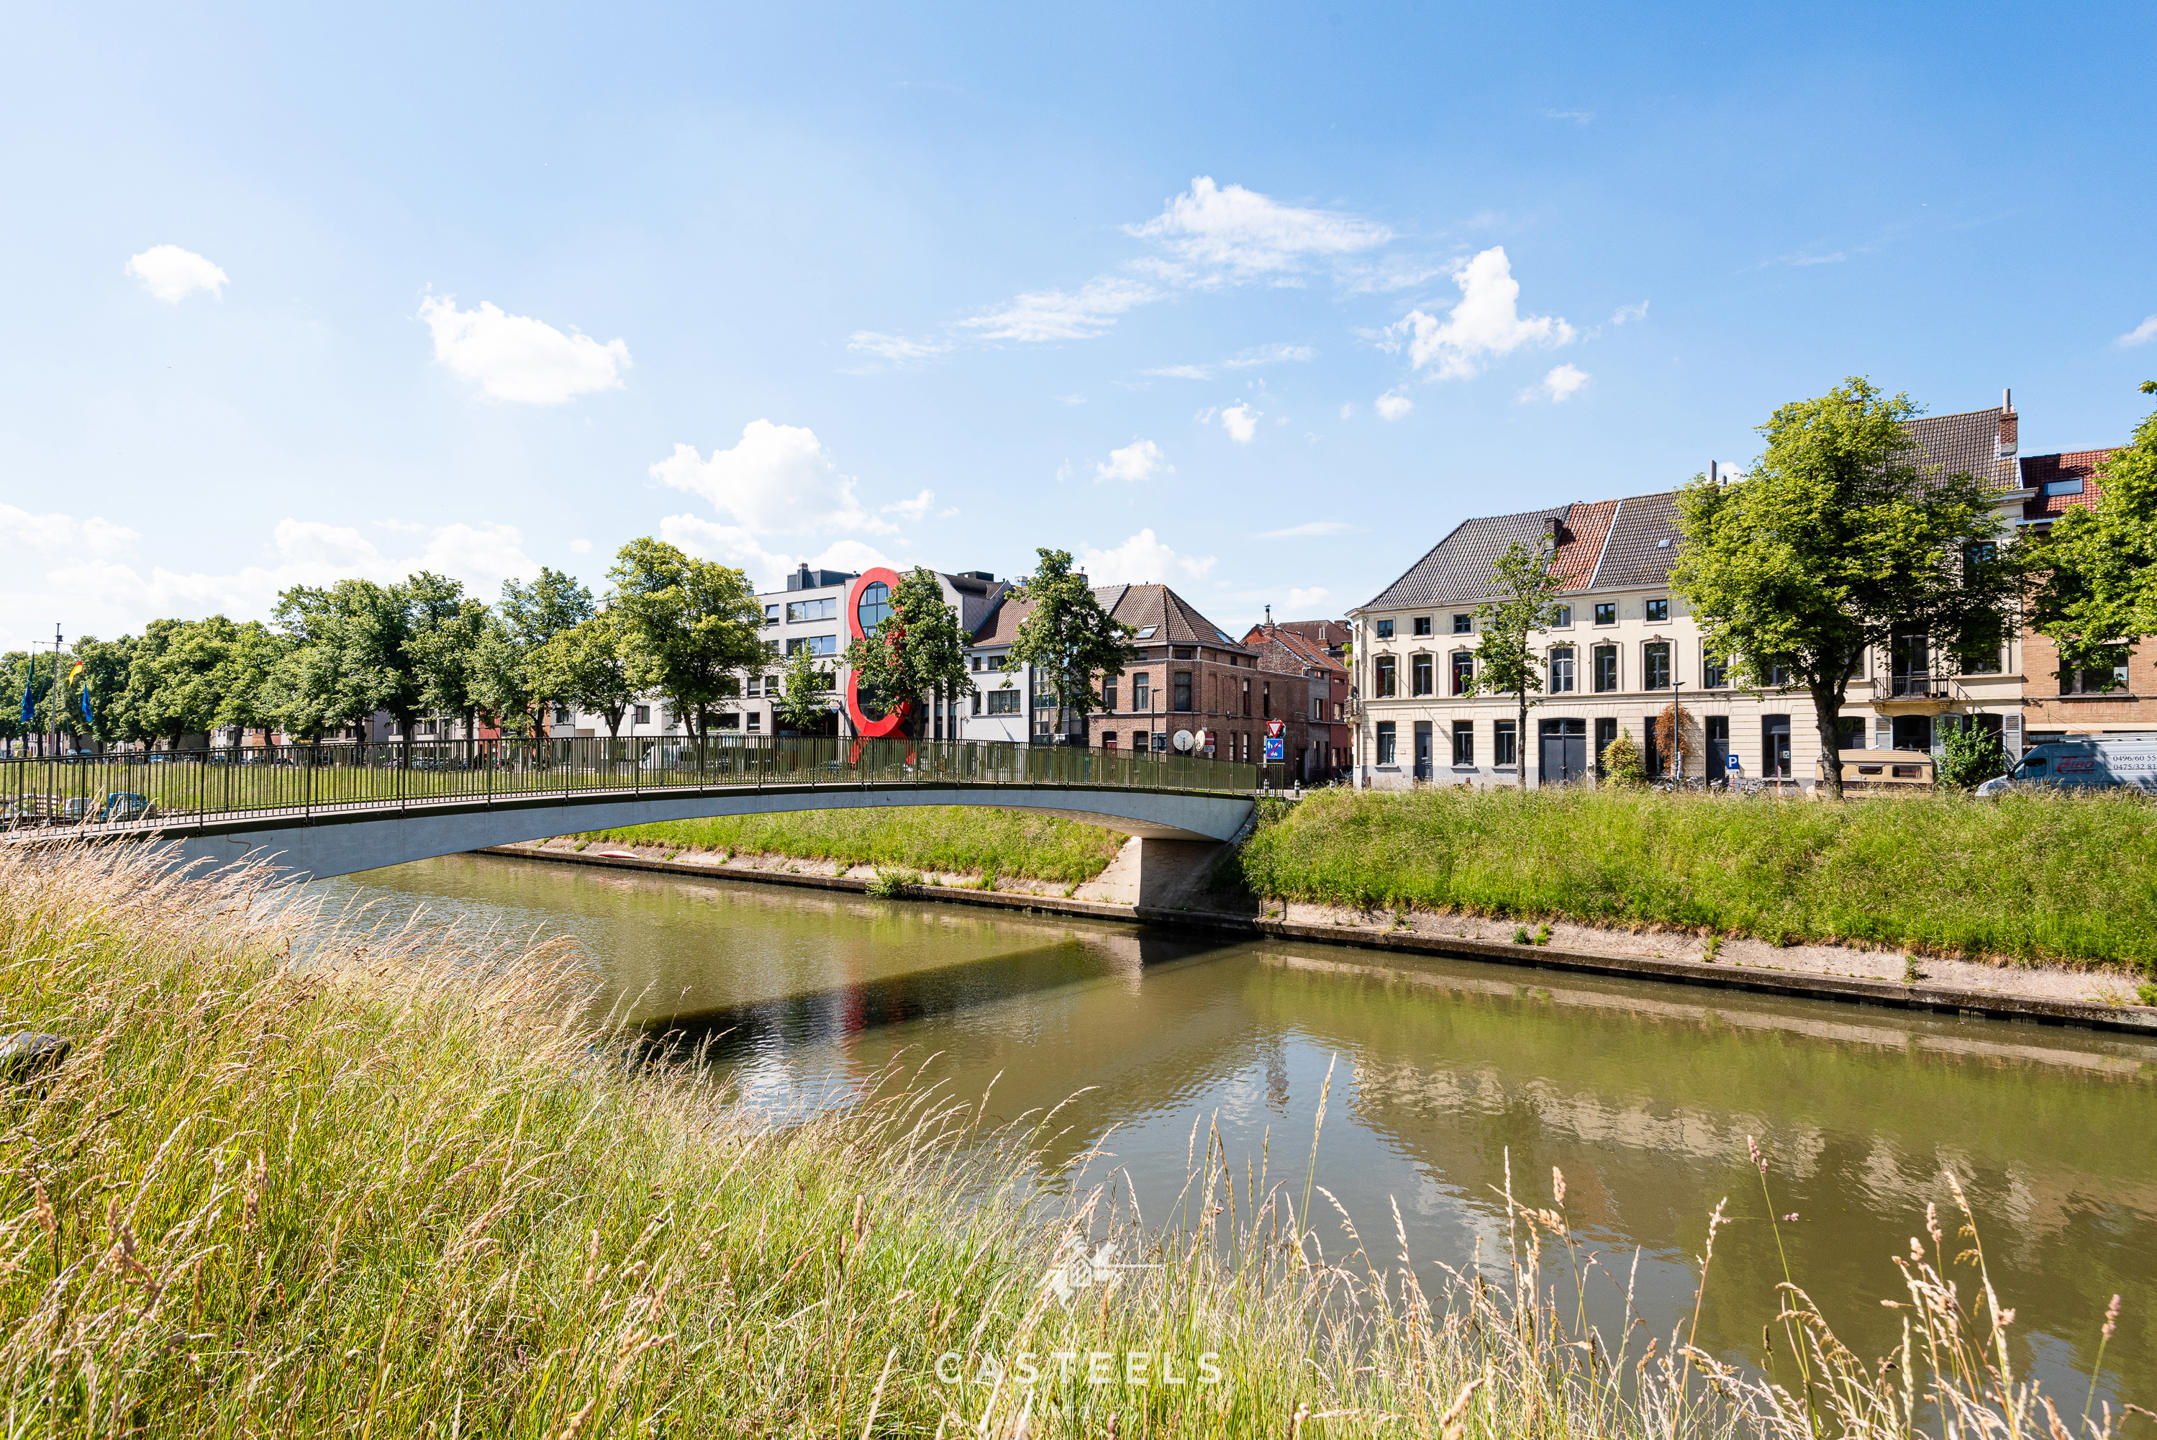 Afbeelding Gerenoveerde burgerwoning op toplocatie te Gent! - Casteels Vastgoed